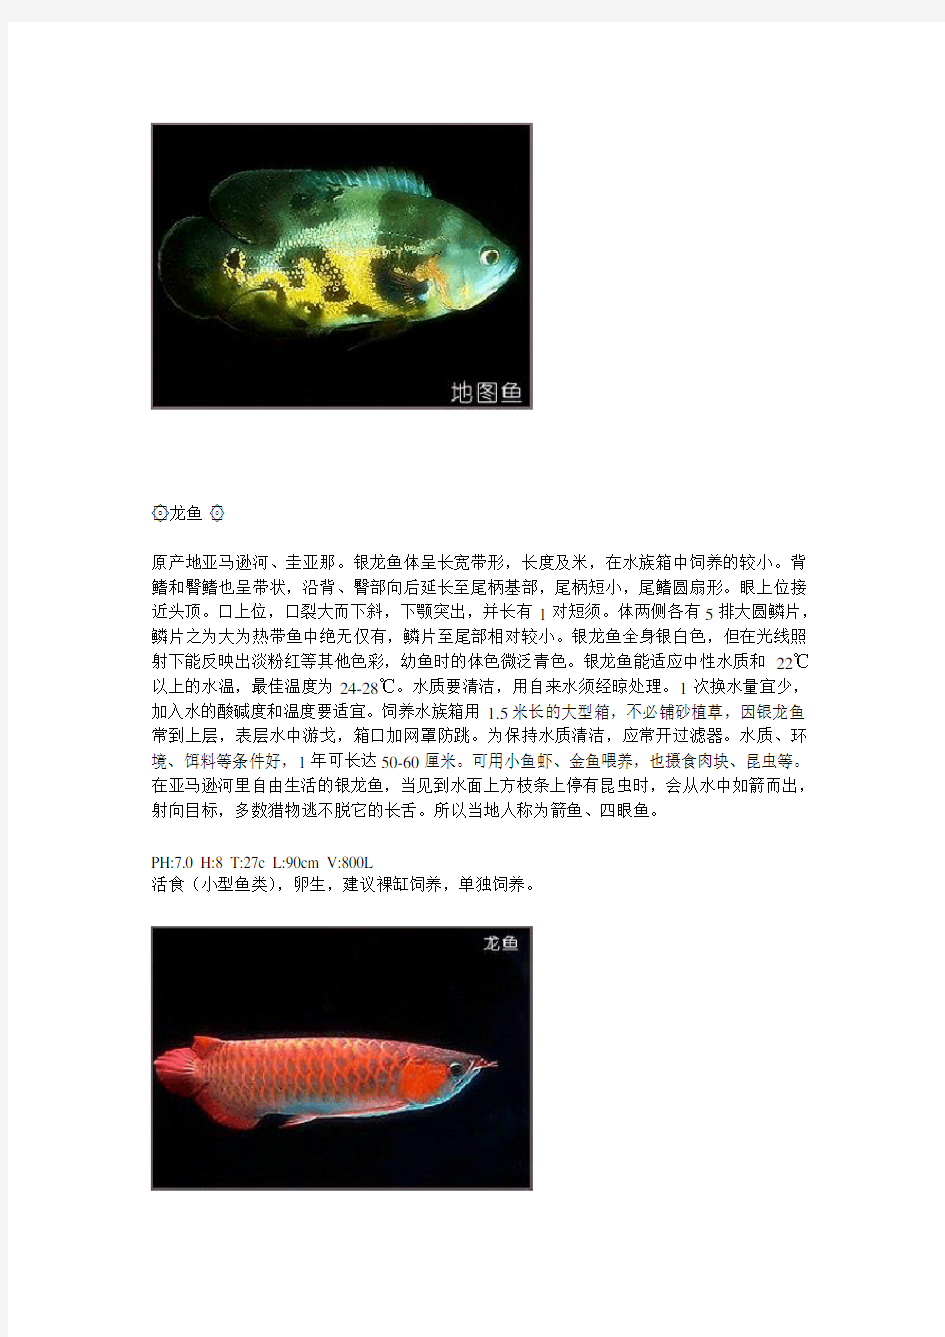 40种热带鱼简介